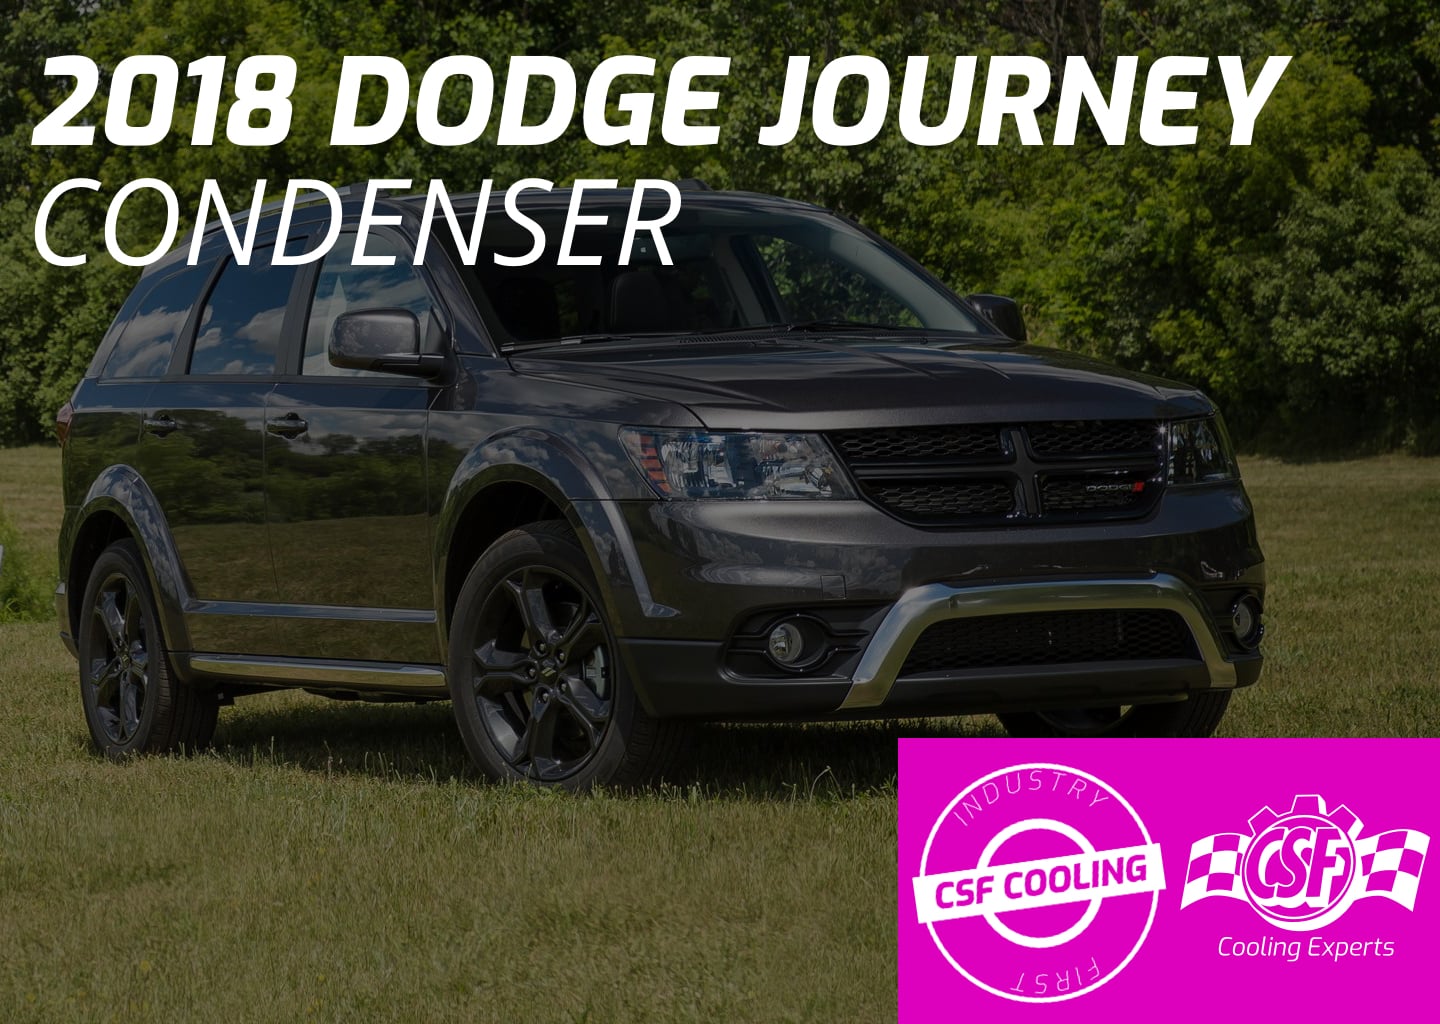 2018 Dodge Journey Condenser